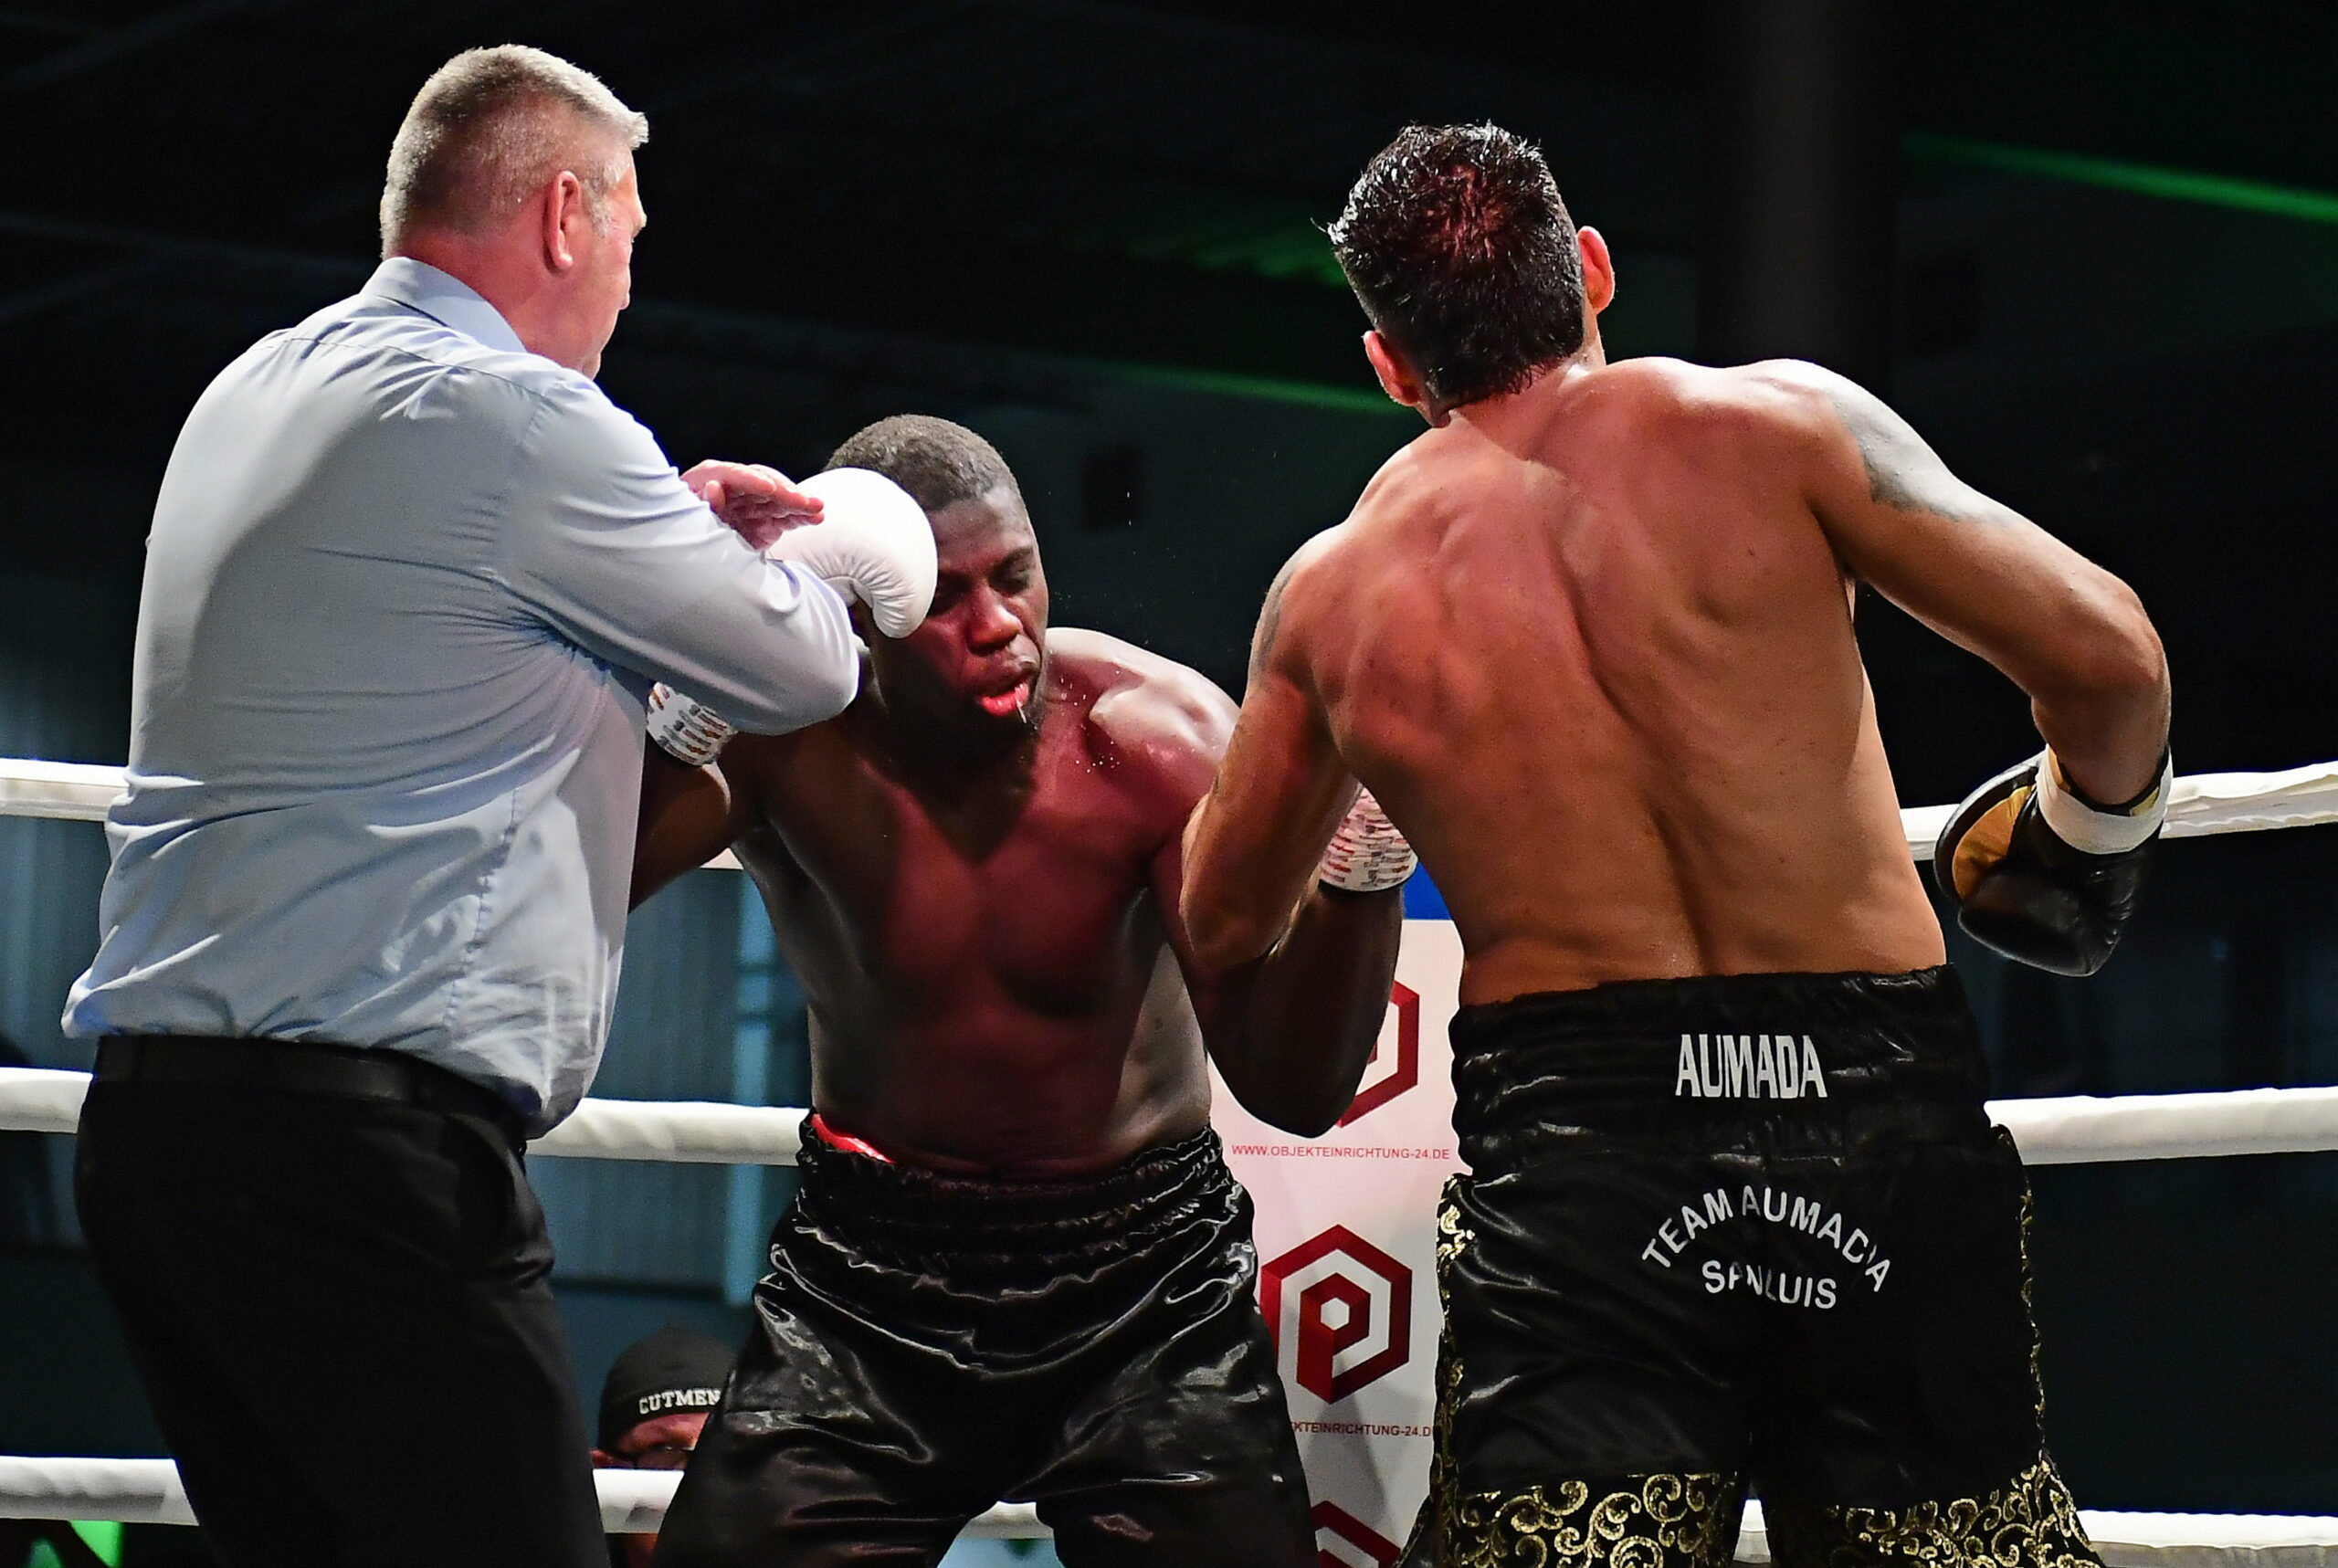 Der Hamburger Boxer Peter Kadiru kassiert schwere Treffer von Gegner Marcos Aumada